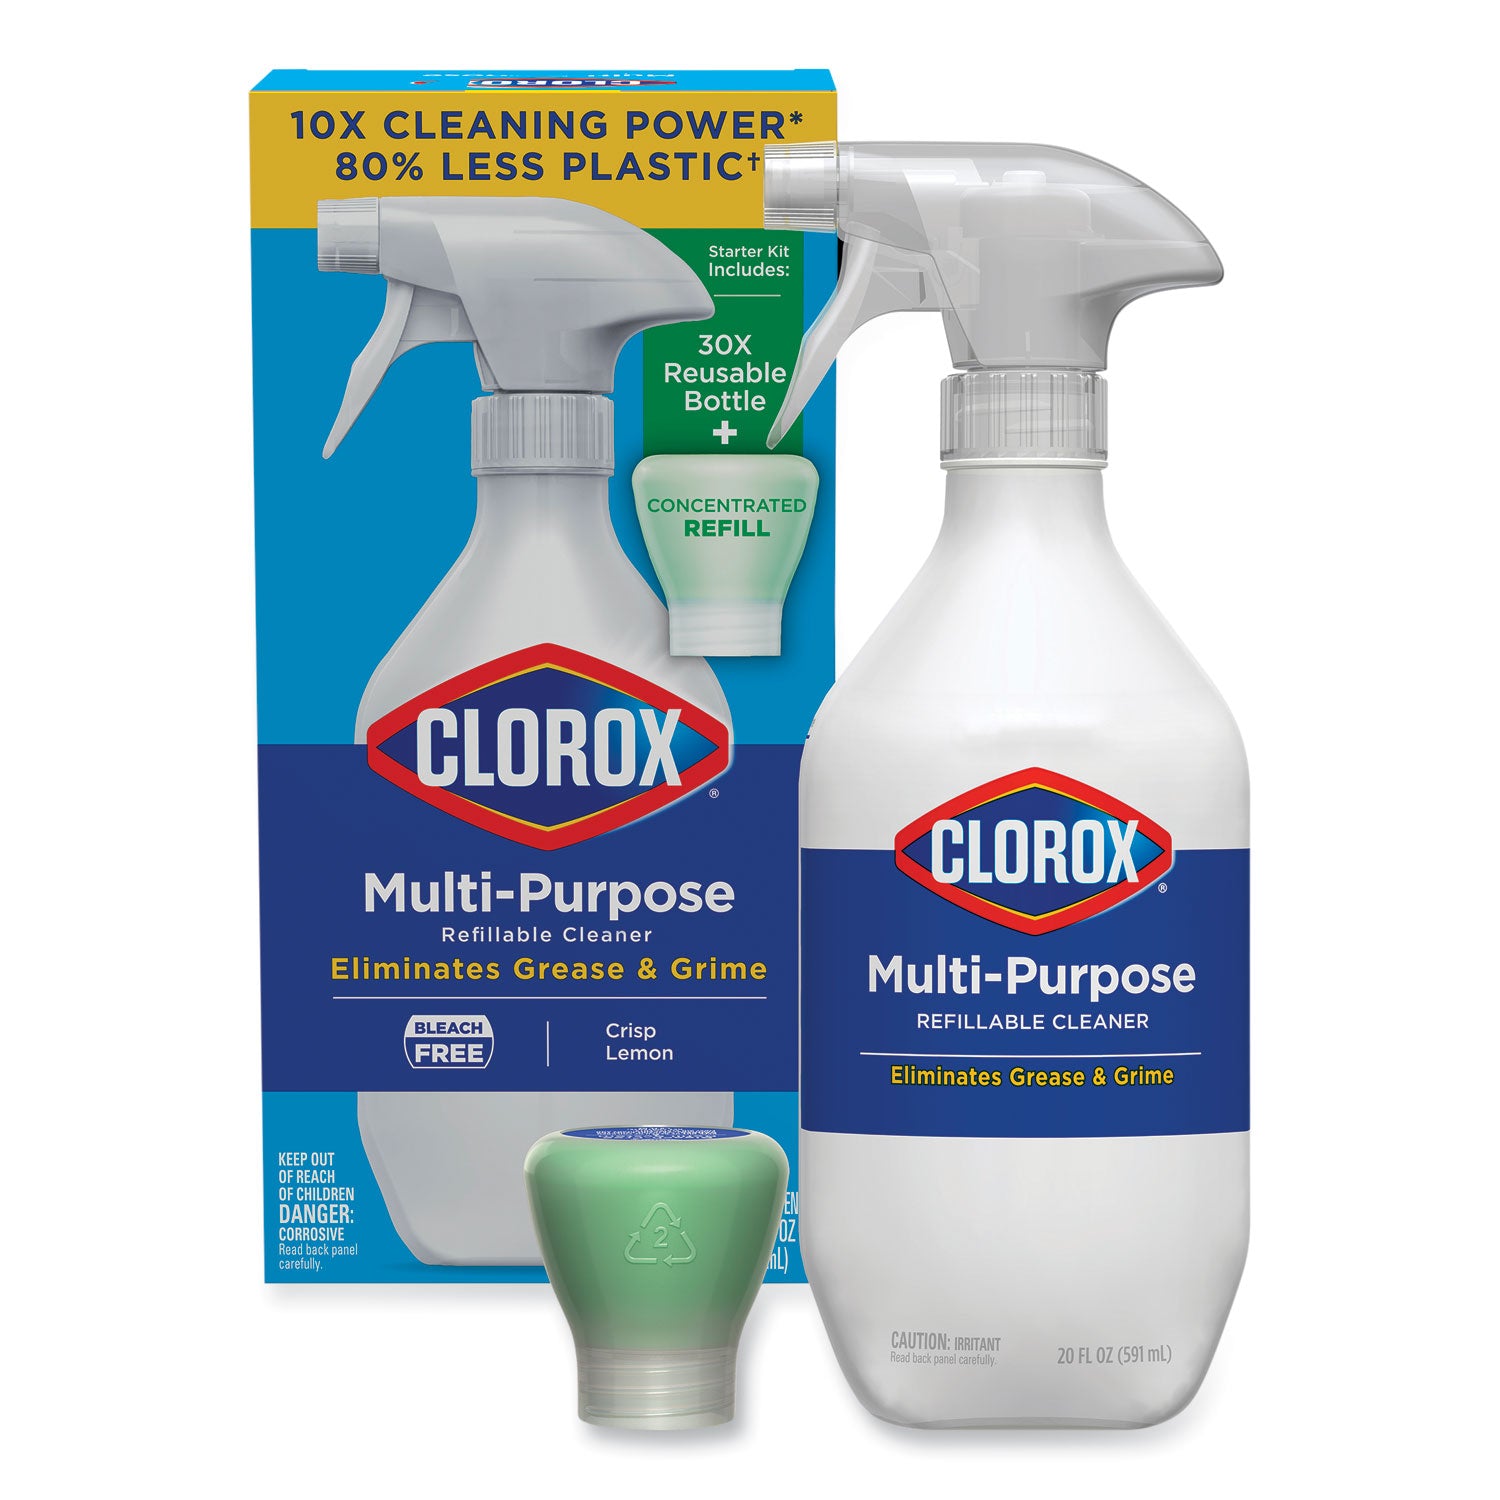 clorox-multipurpose-degreaser-cleaner-refillable-starter-kit-crisp-lemon-scent_clo60160 - 1